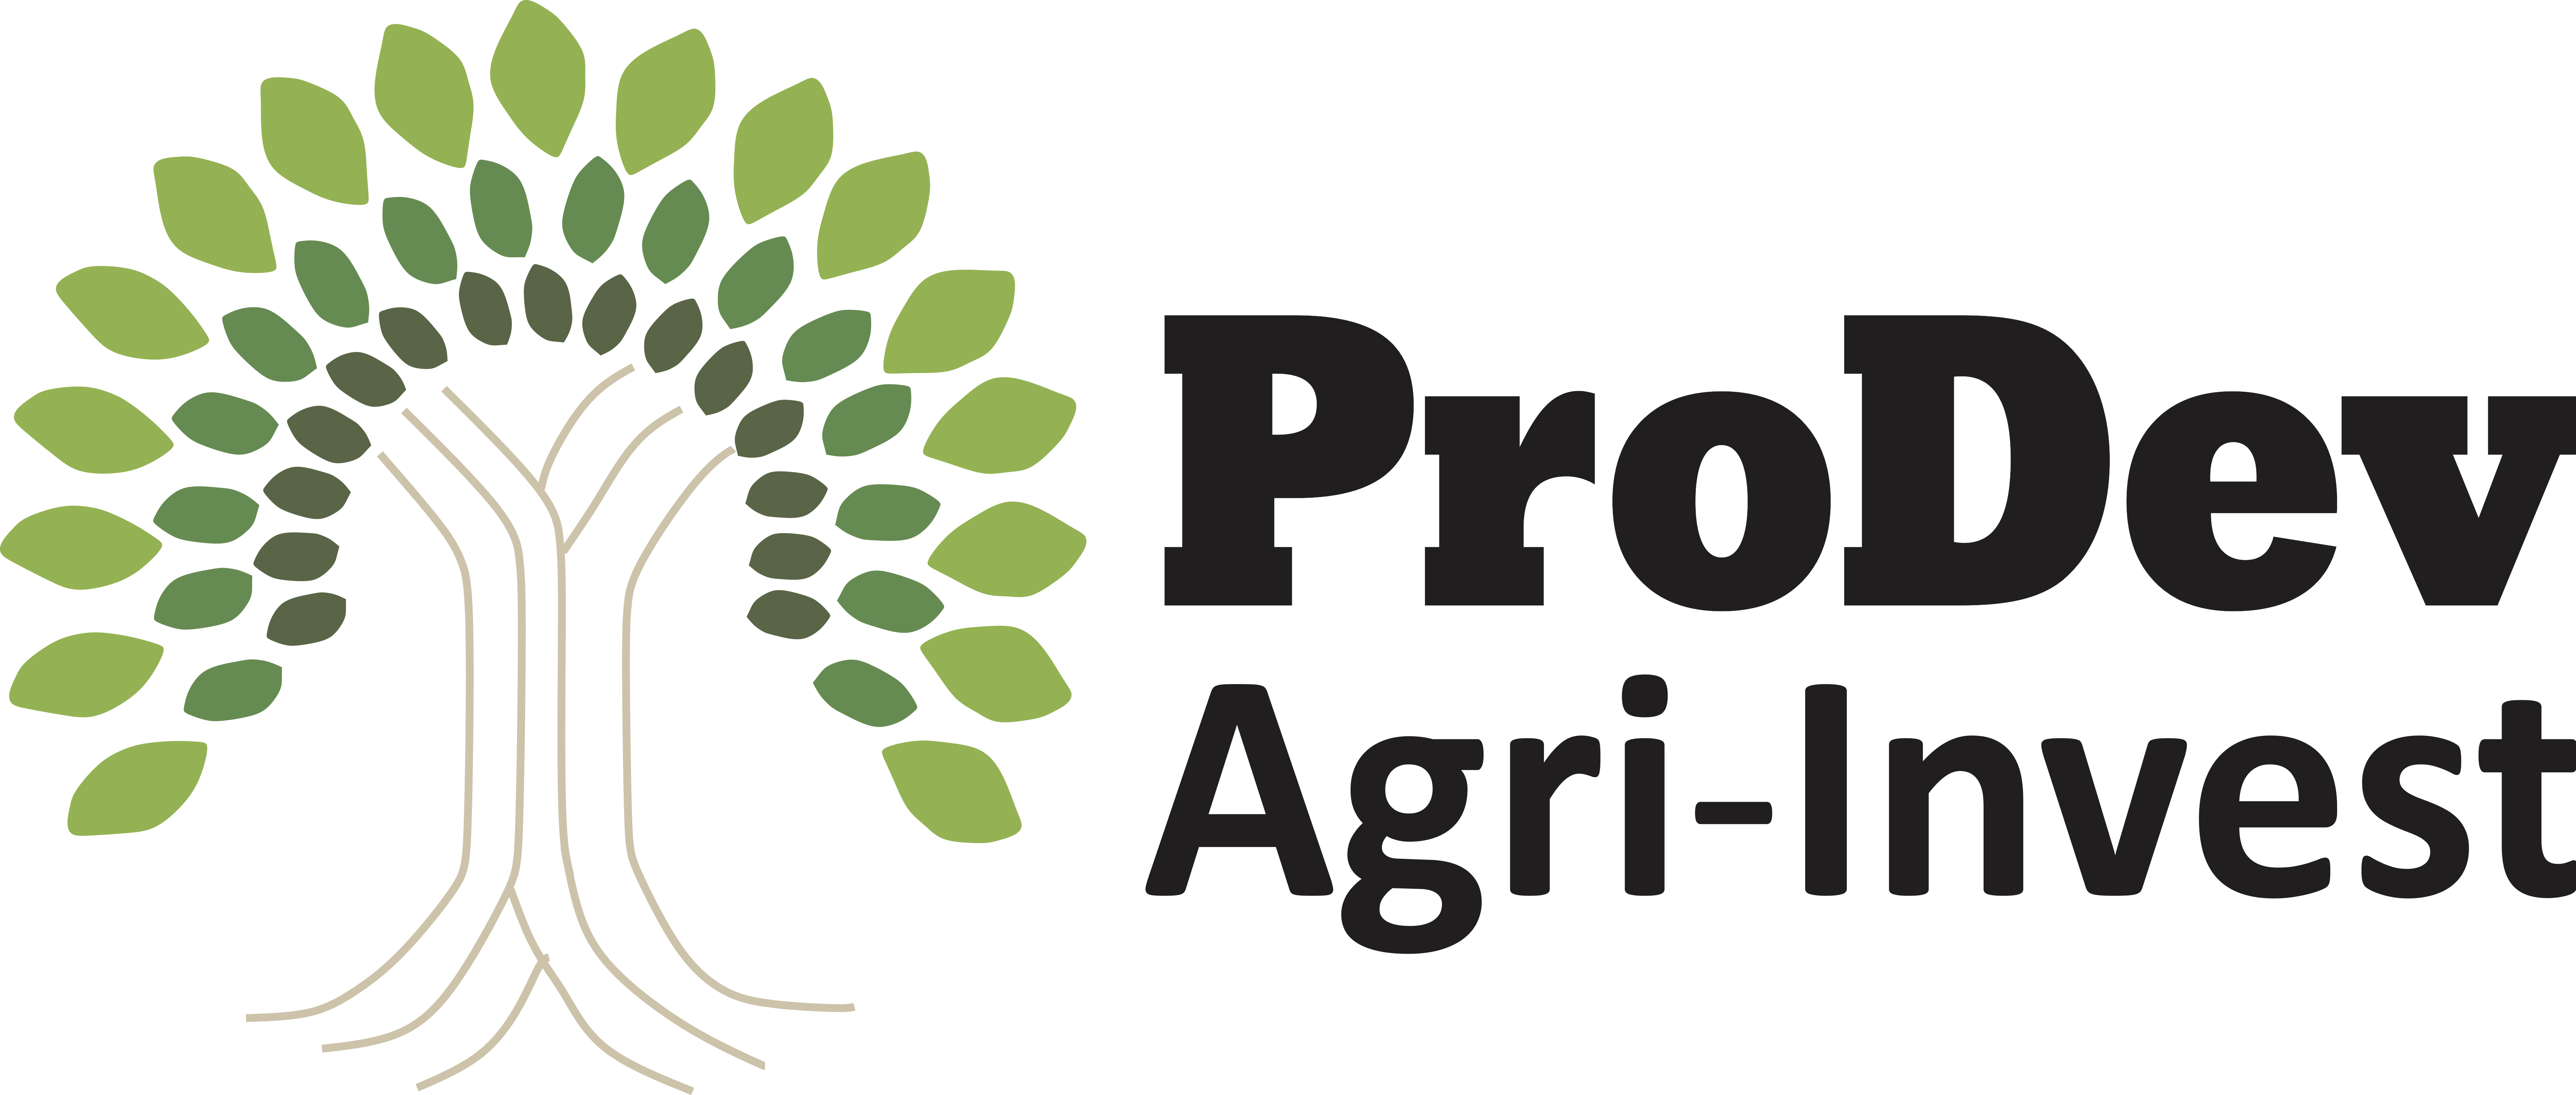 Prodev Agri-Invest